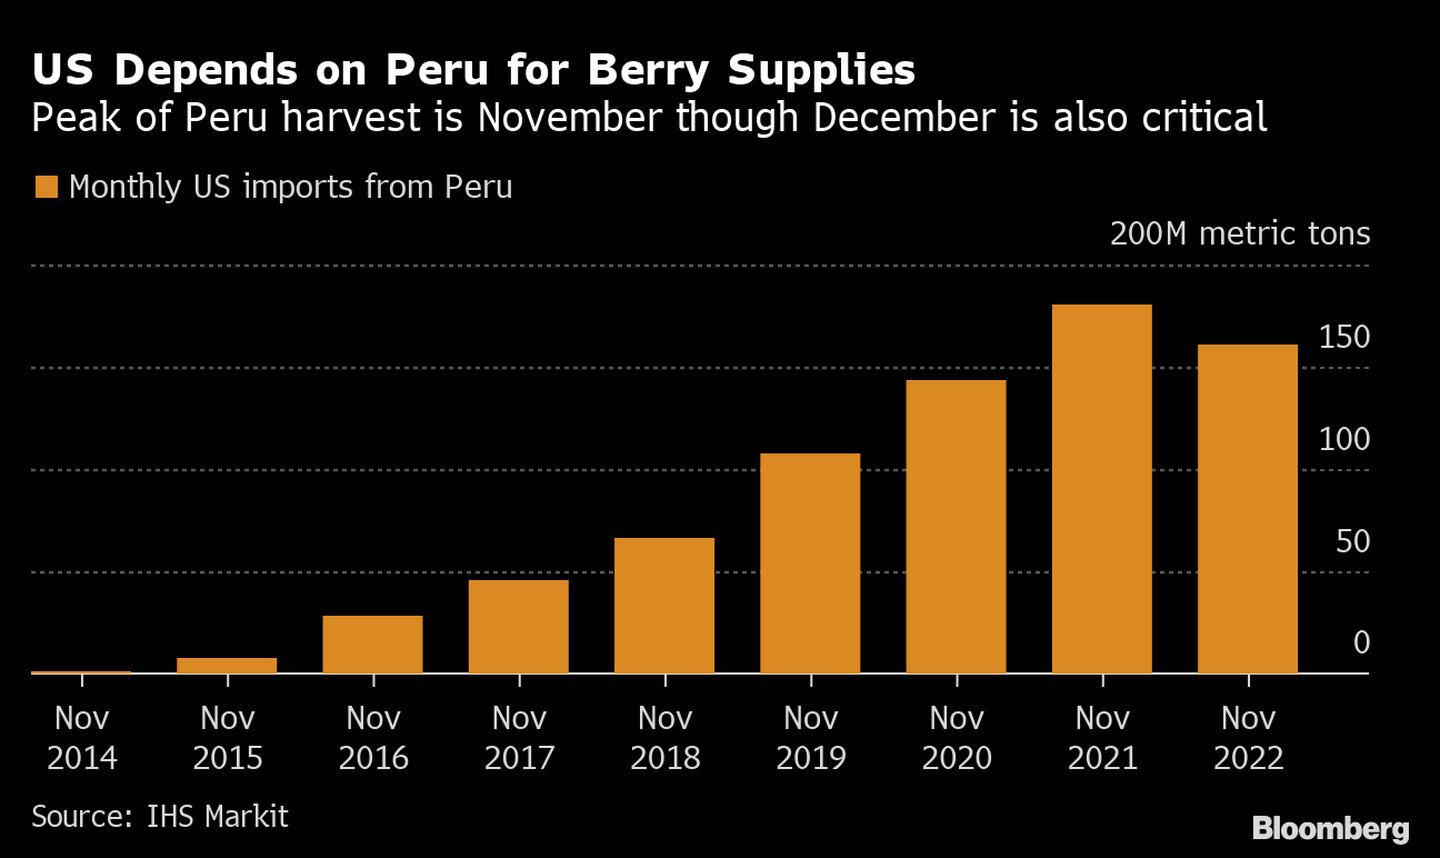  Los suministros de frutas de Perú son especialmente críticos para EE.UU. dfd